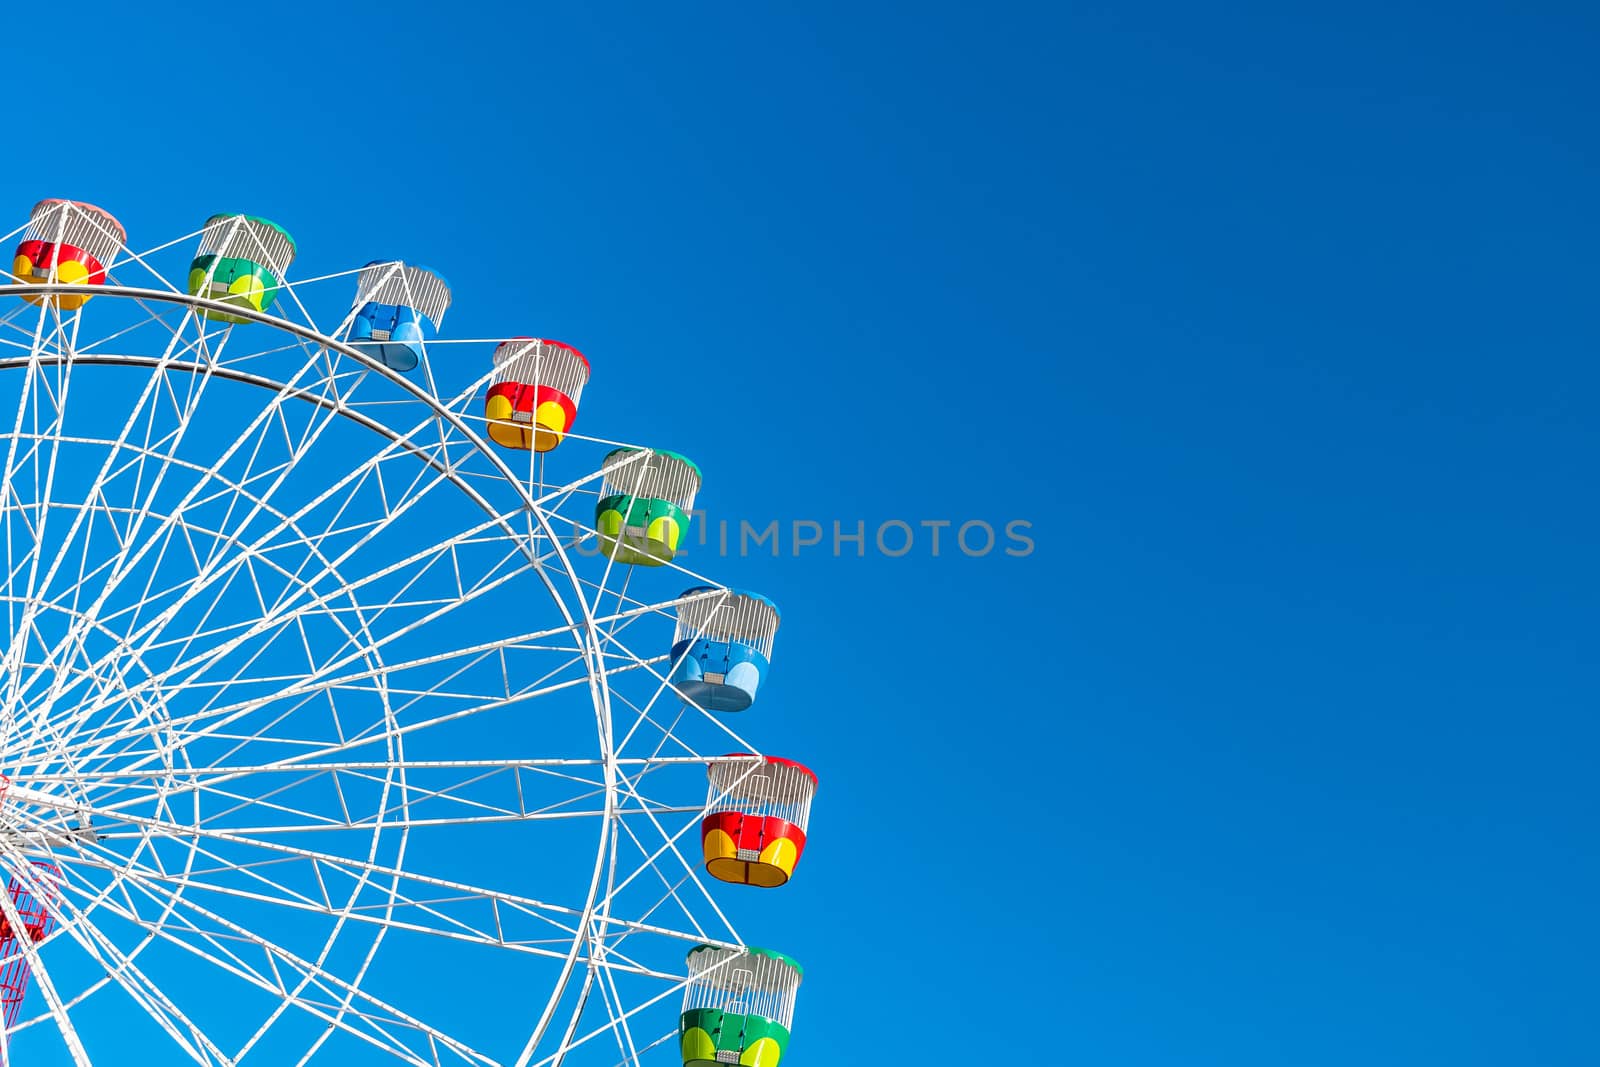 Ferris wheel on clear blue sky background by mauricallari